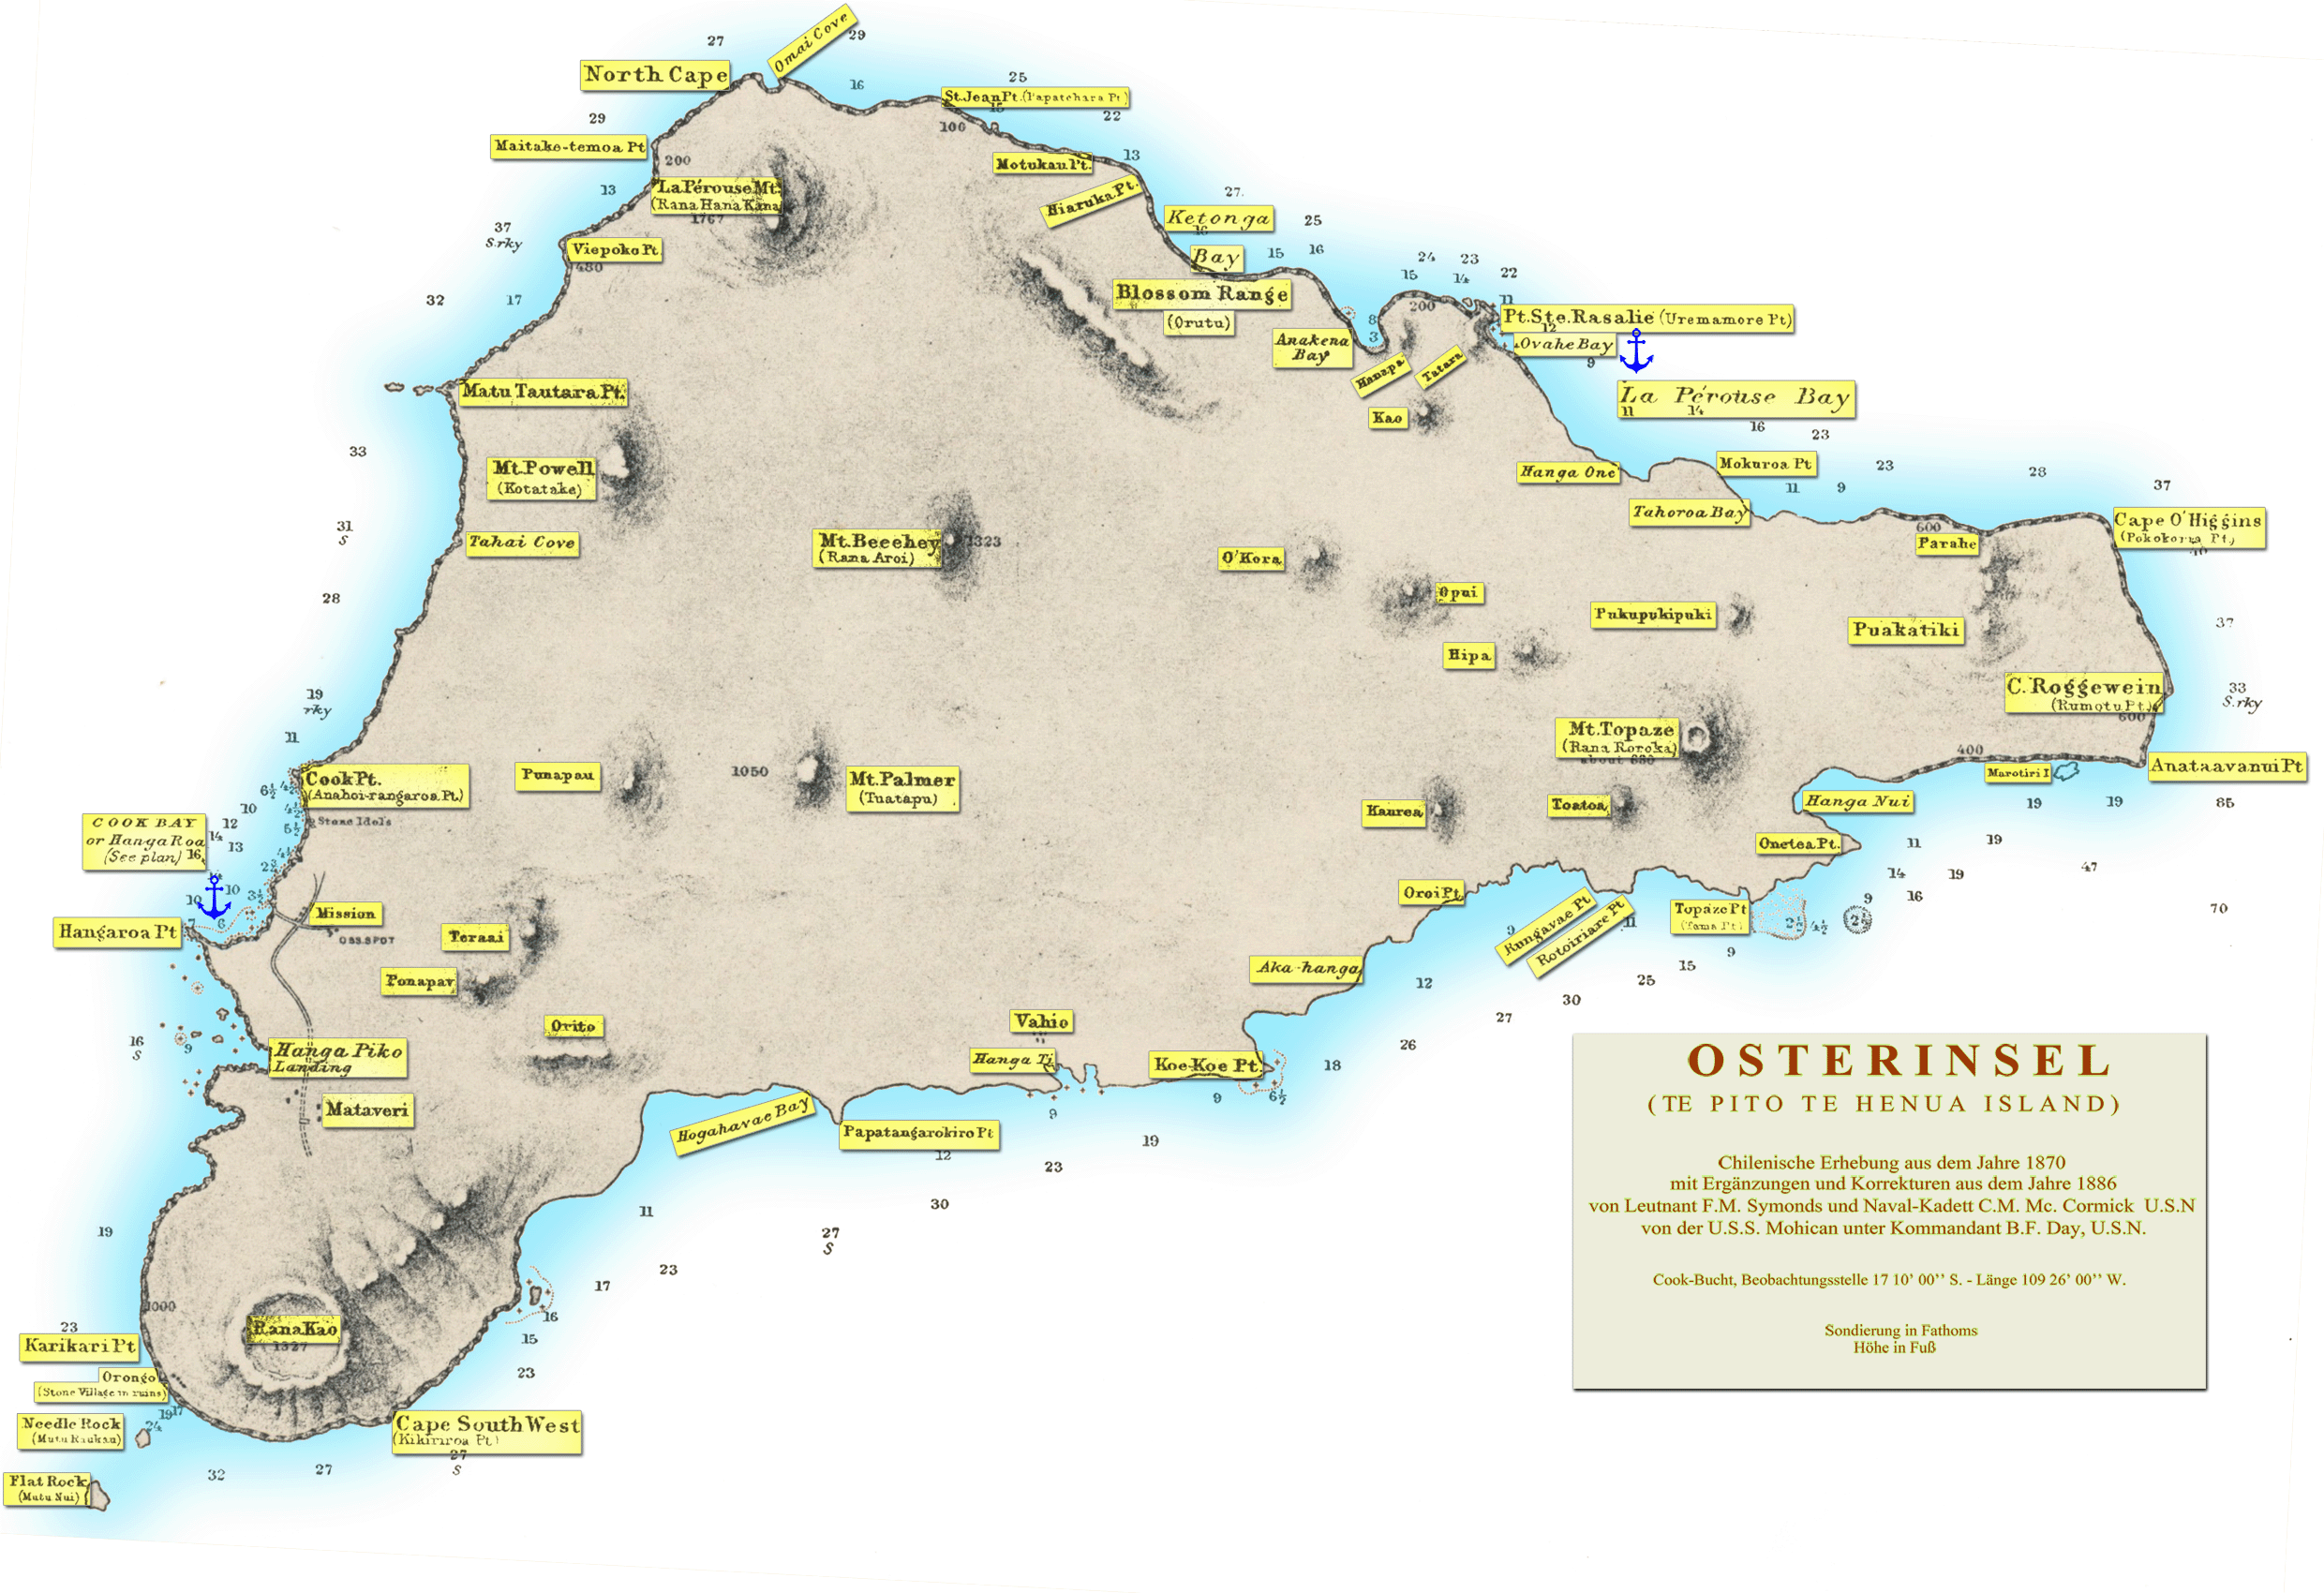 Karte von der Osterinsel aus dem Jahre 1904 von Alexander Agassiz